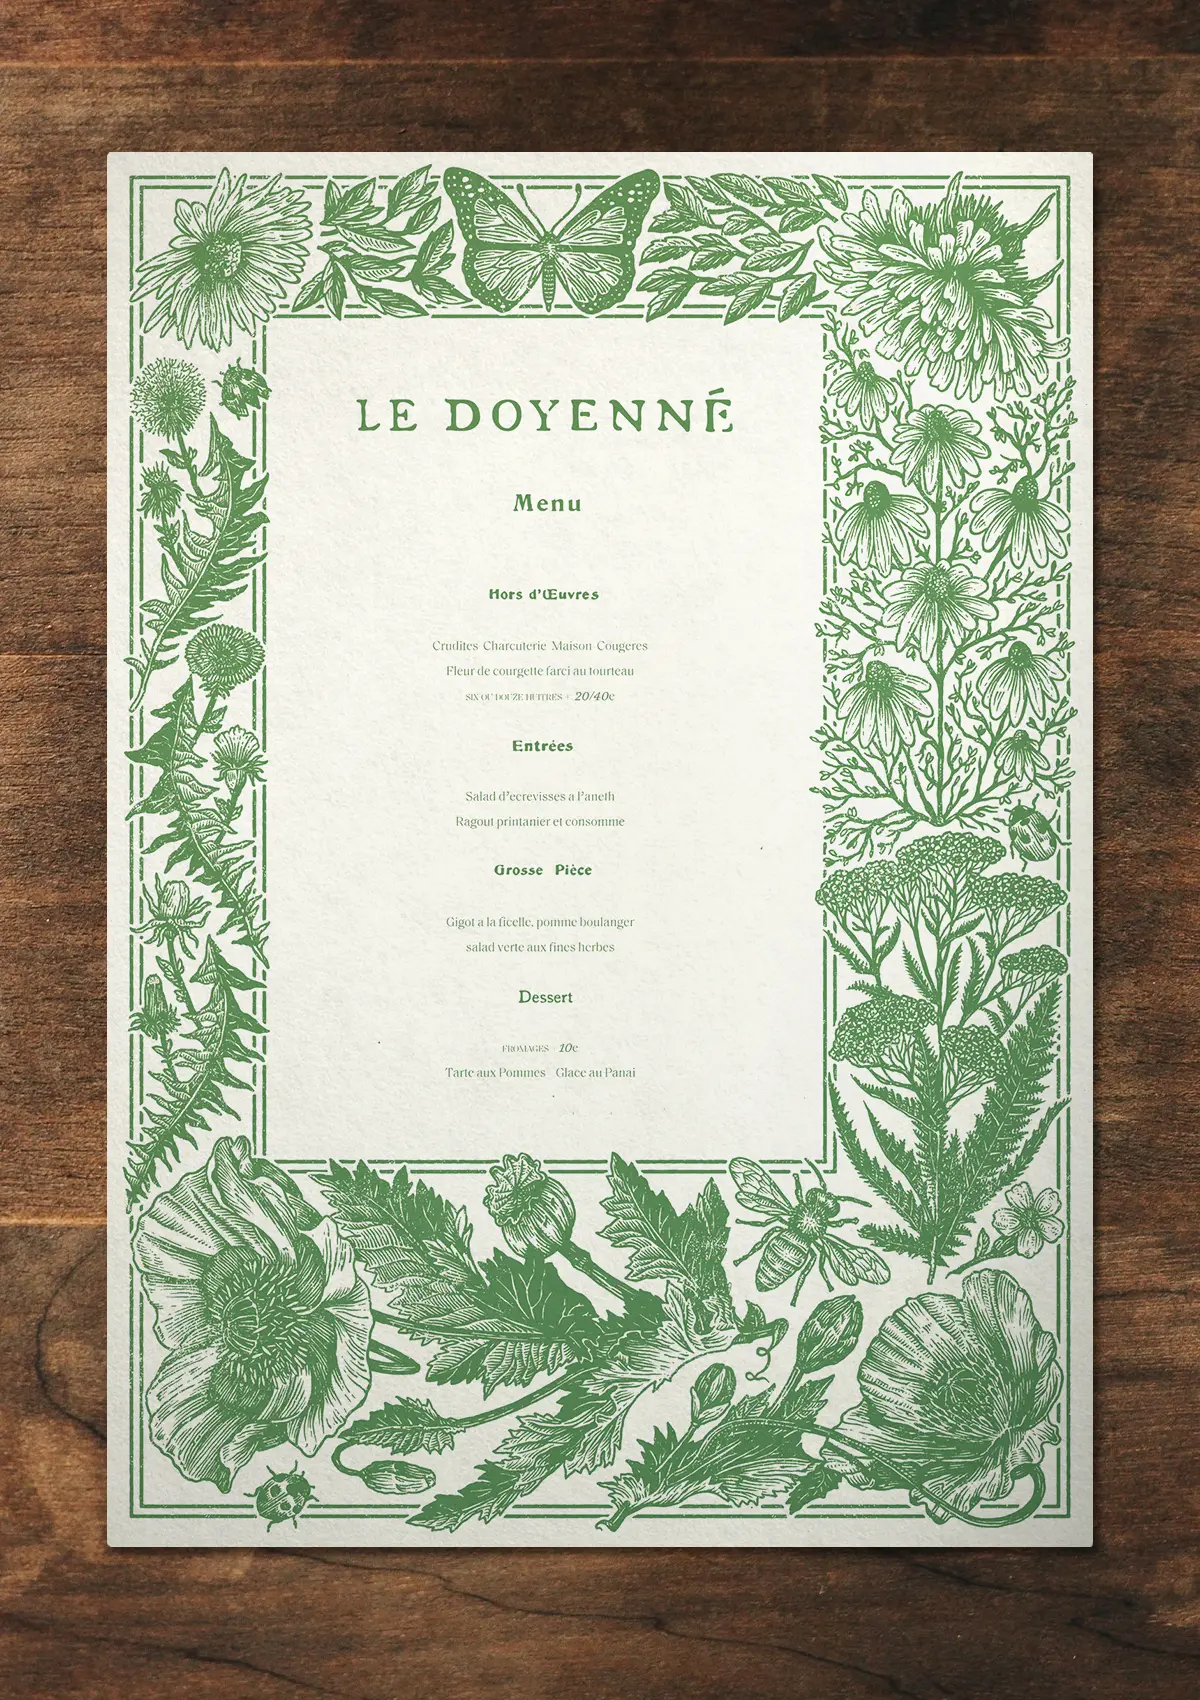 Le Doyenne menu artwork